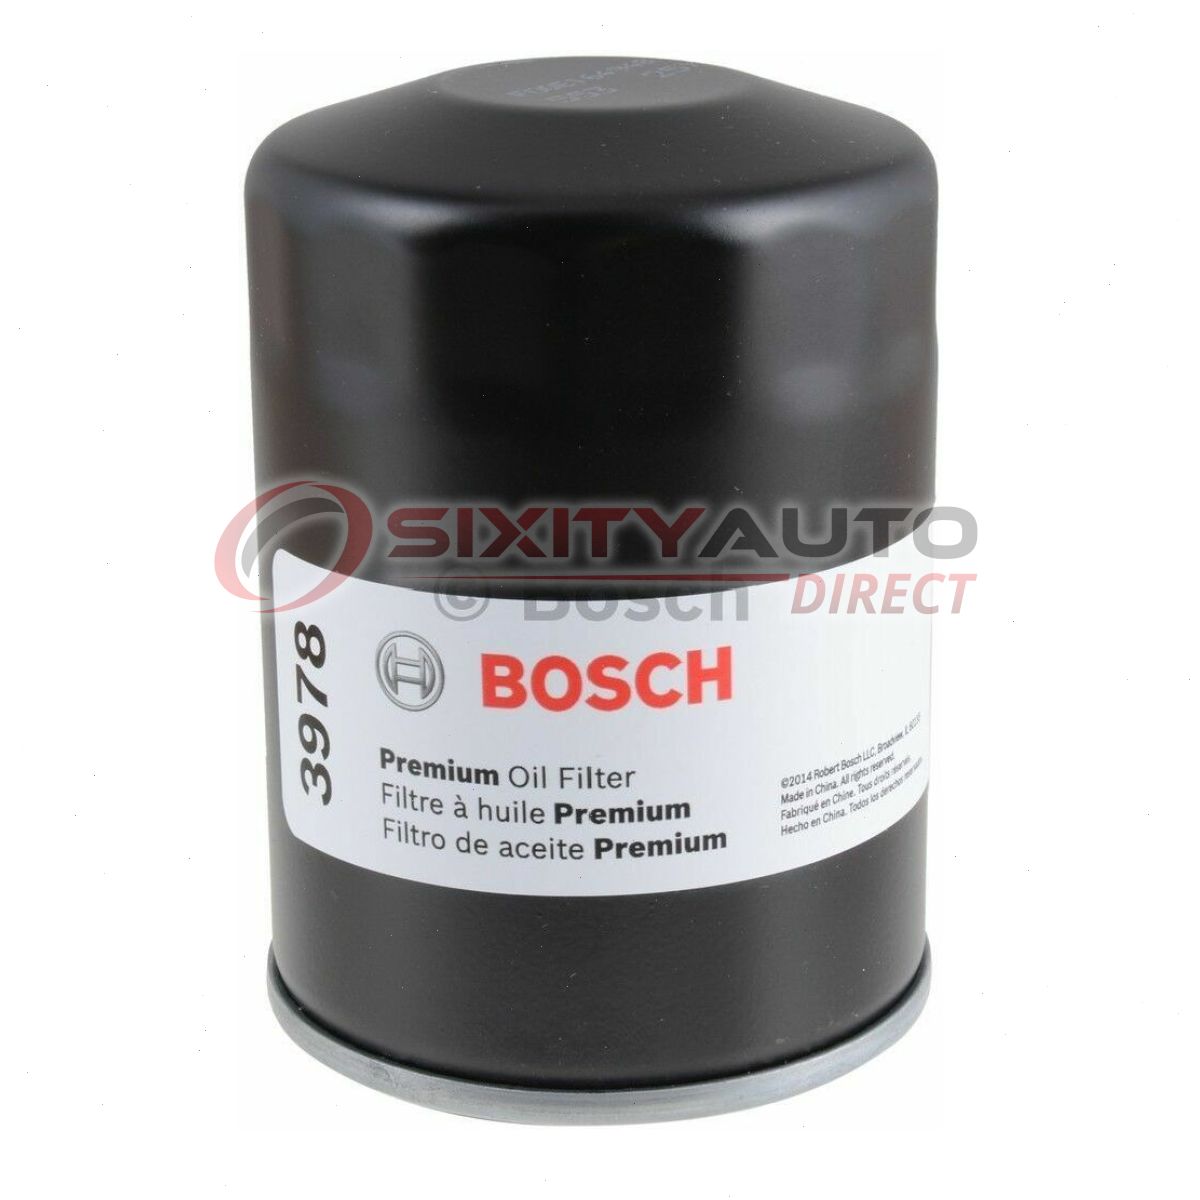 Bosch Oil Filter Size Chart